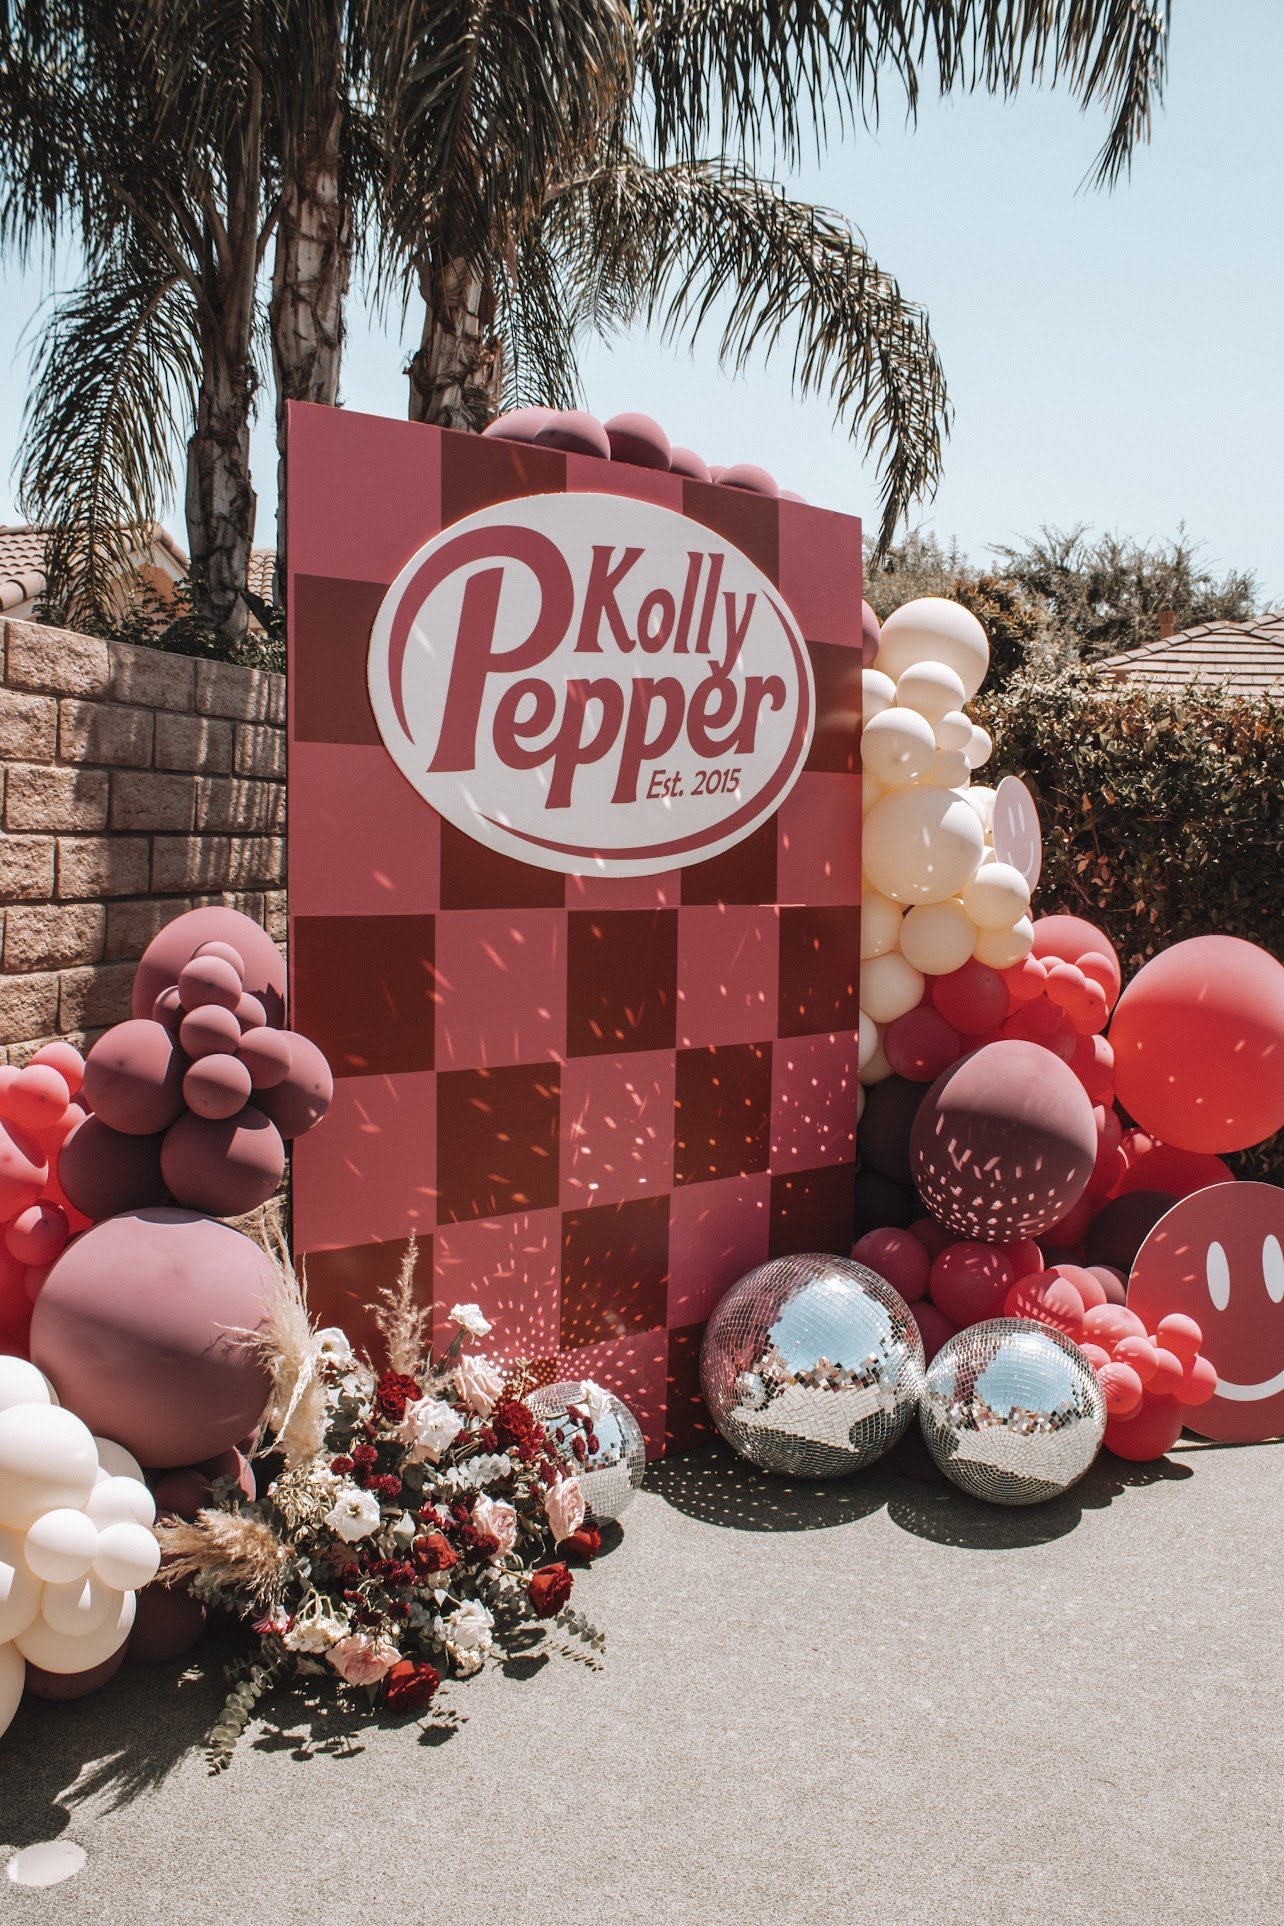 Kolly Pepper backdrop